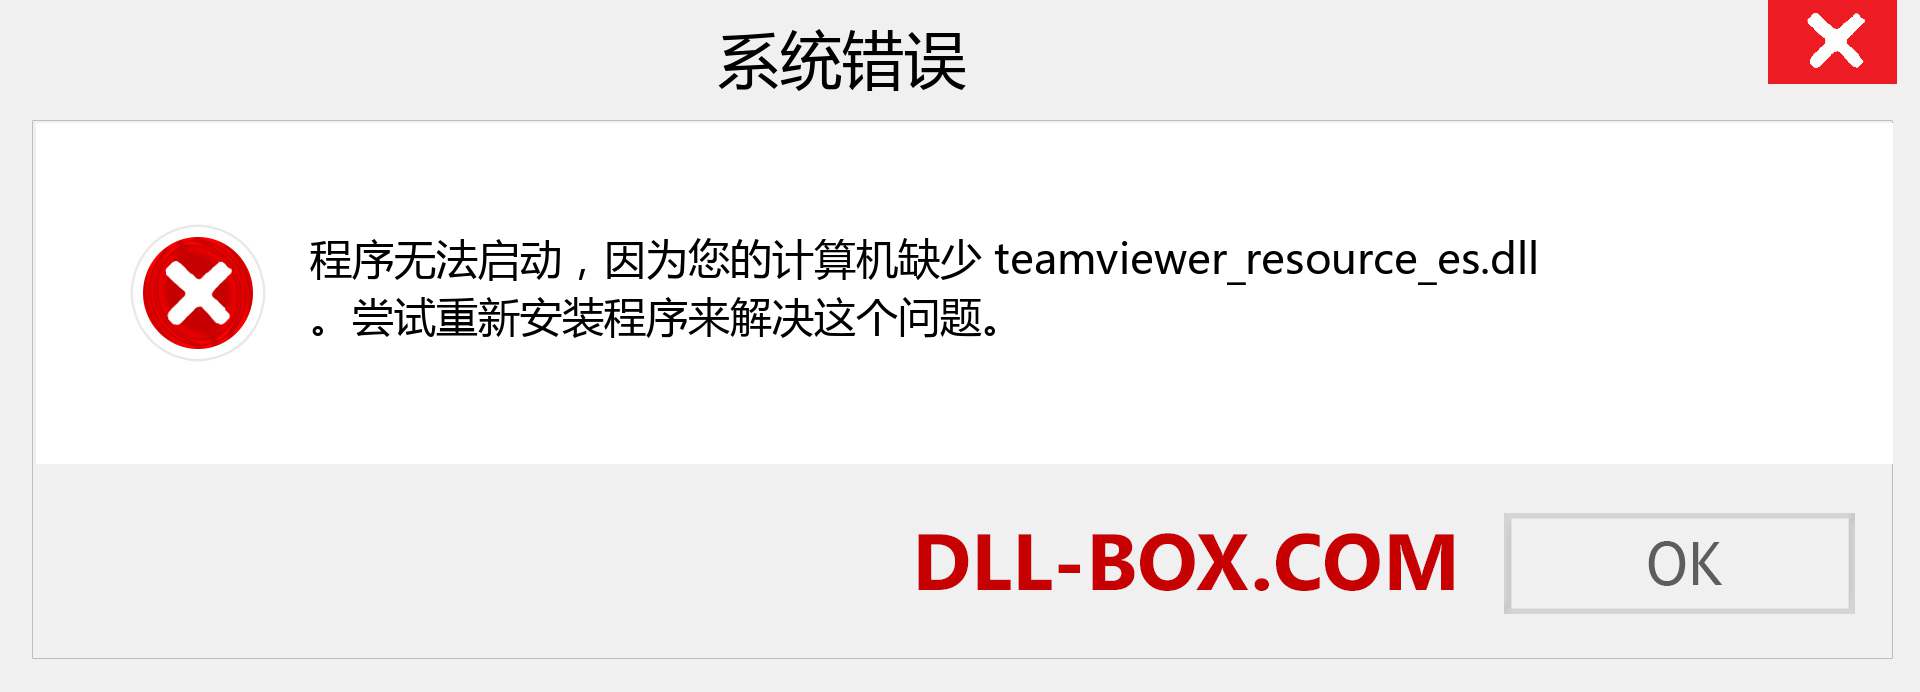 teamviewer_resource_es.dll 文件丢失？。 适用于 Windows 7、8、10 的下载 - 修复 Windows、照片、图像上的 teamviewer_resource_es dll 丢失错误